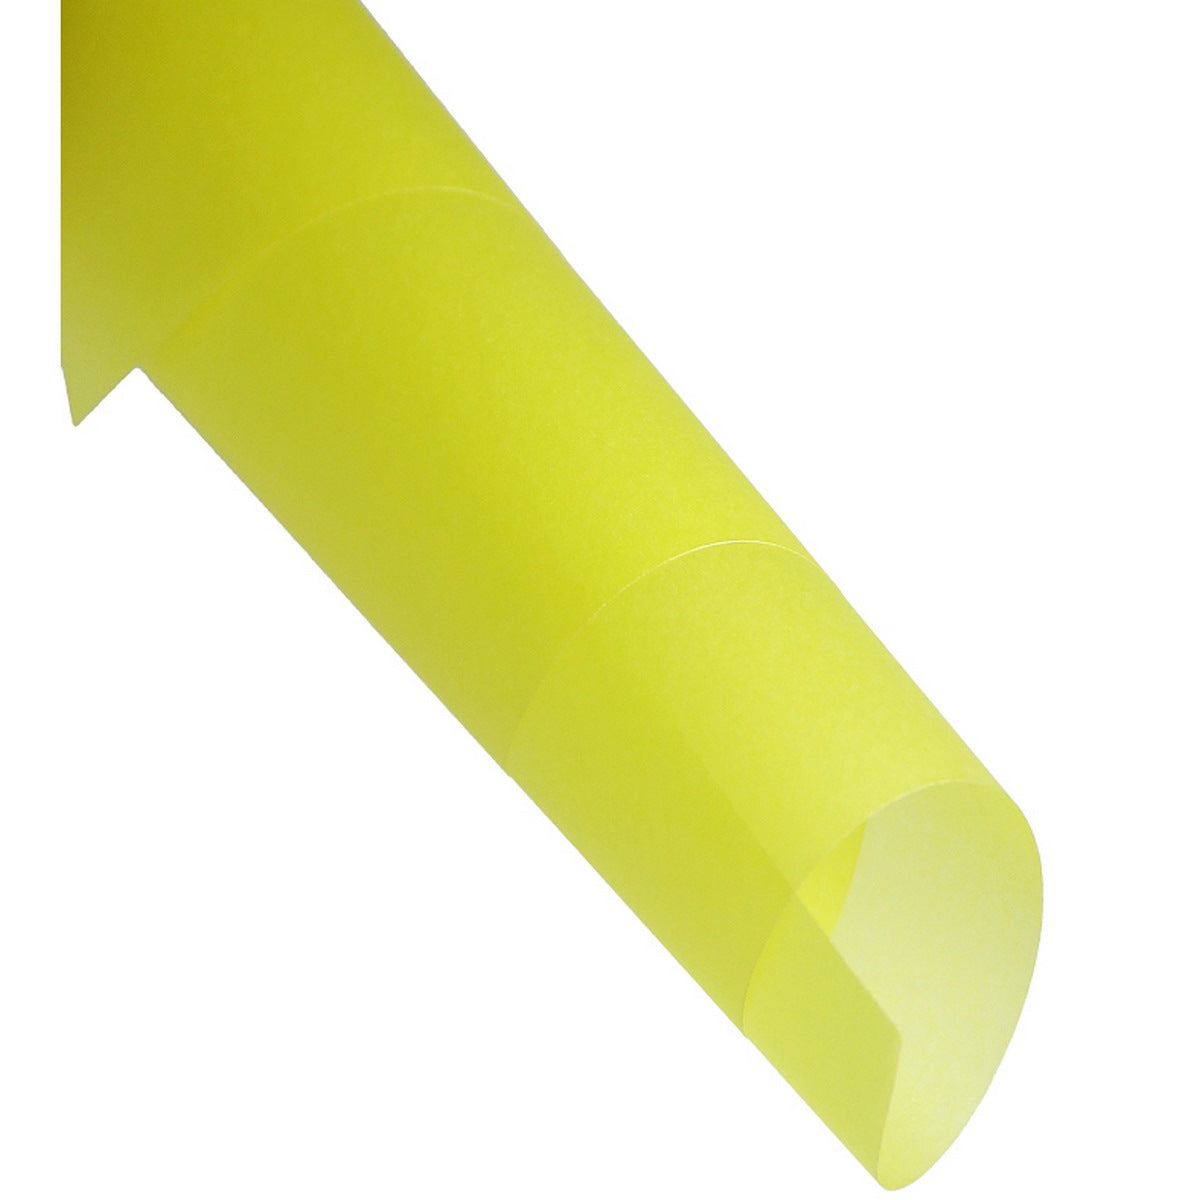 jags-mumbai origami sheet Wellam Paper Plain A4 Yellow 120gsm